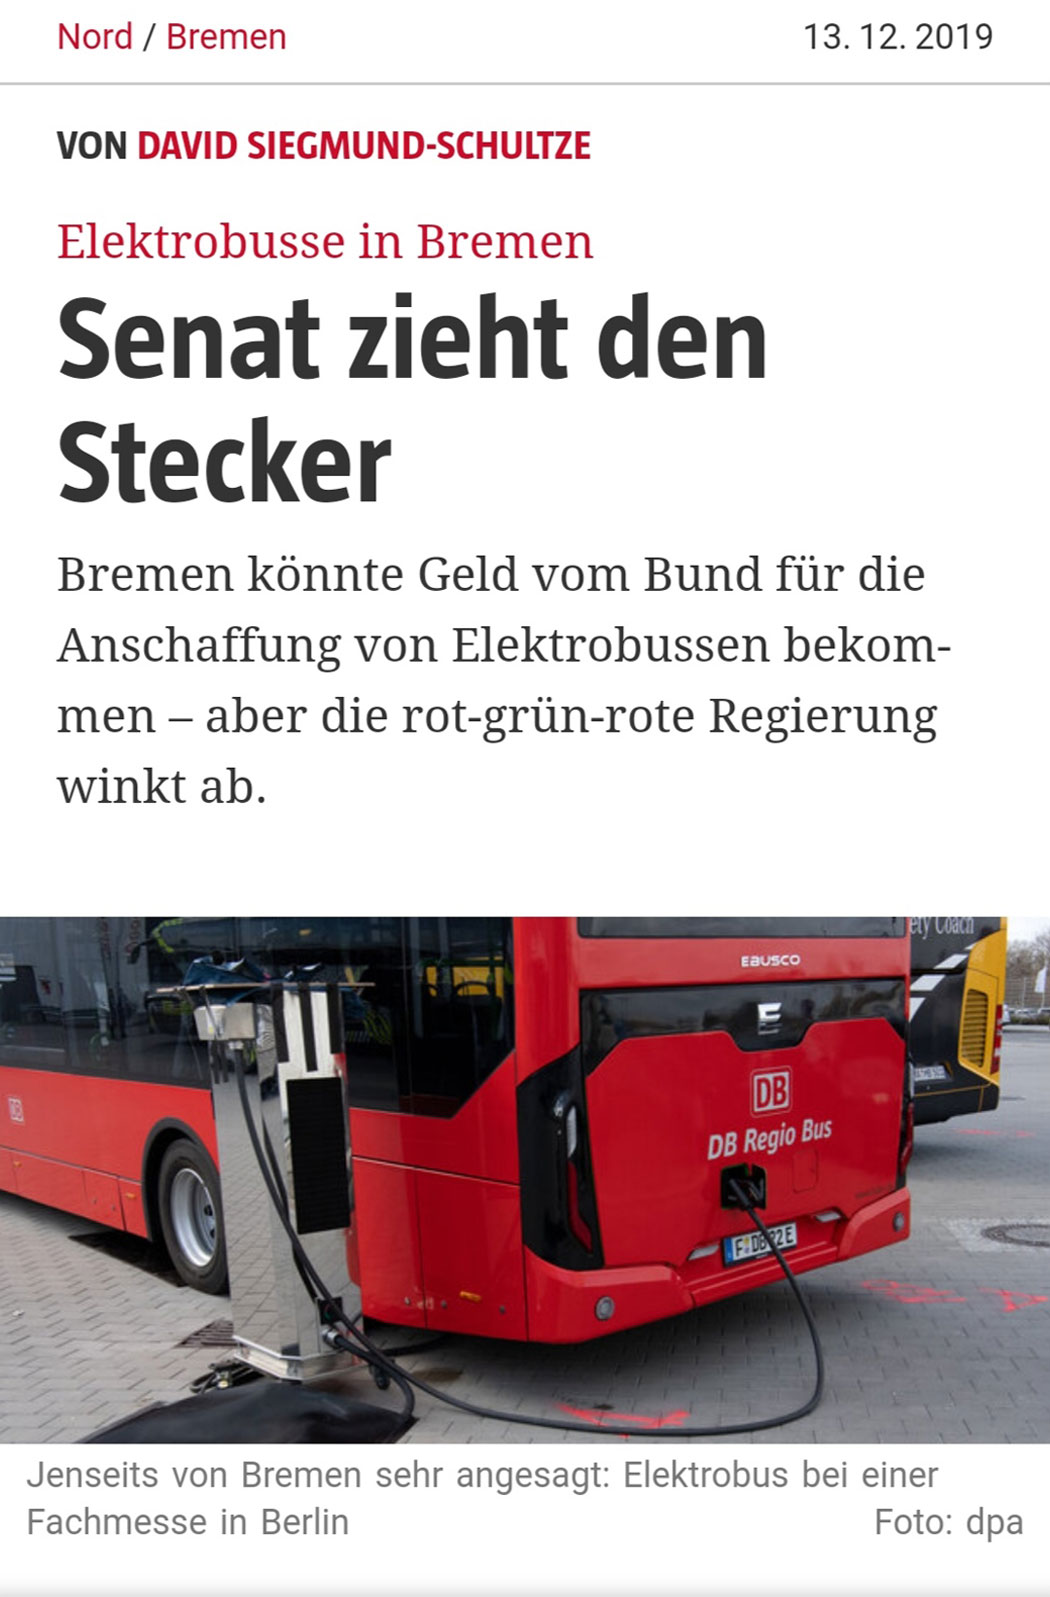 Keine Elektrobusse in Bremen - Senat zieht den Stecker